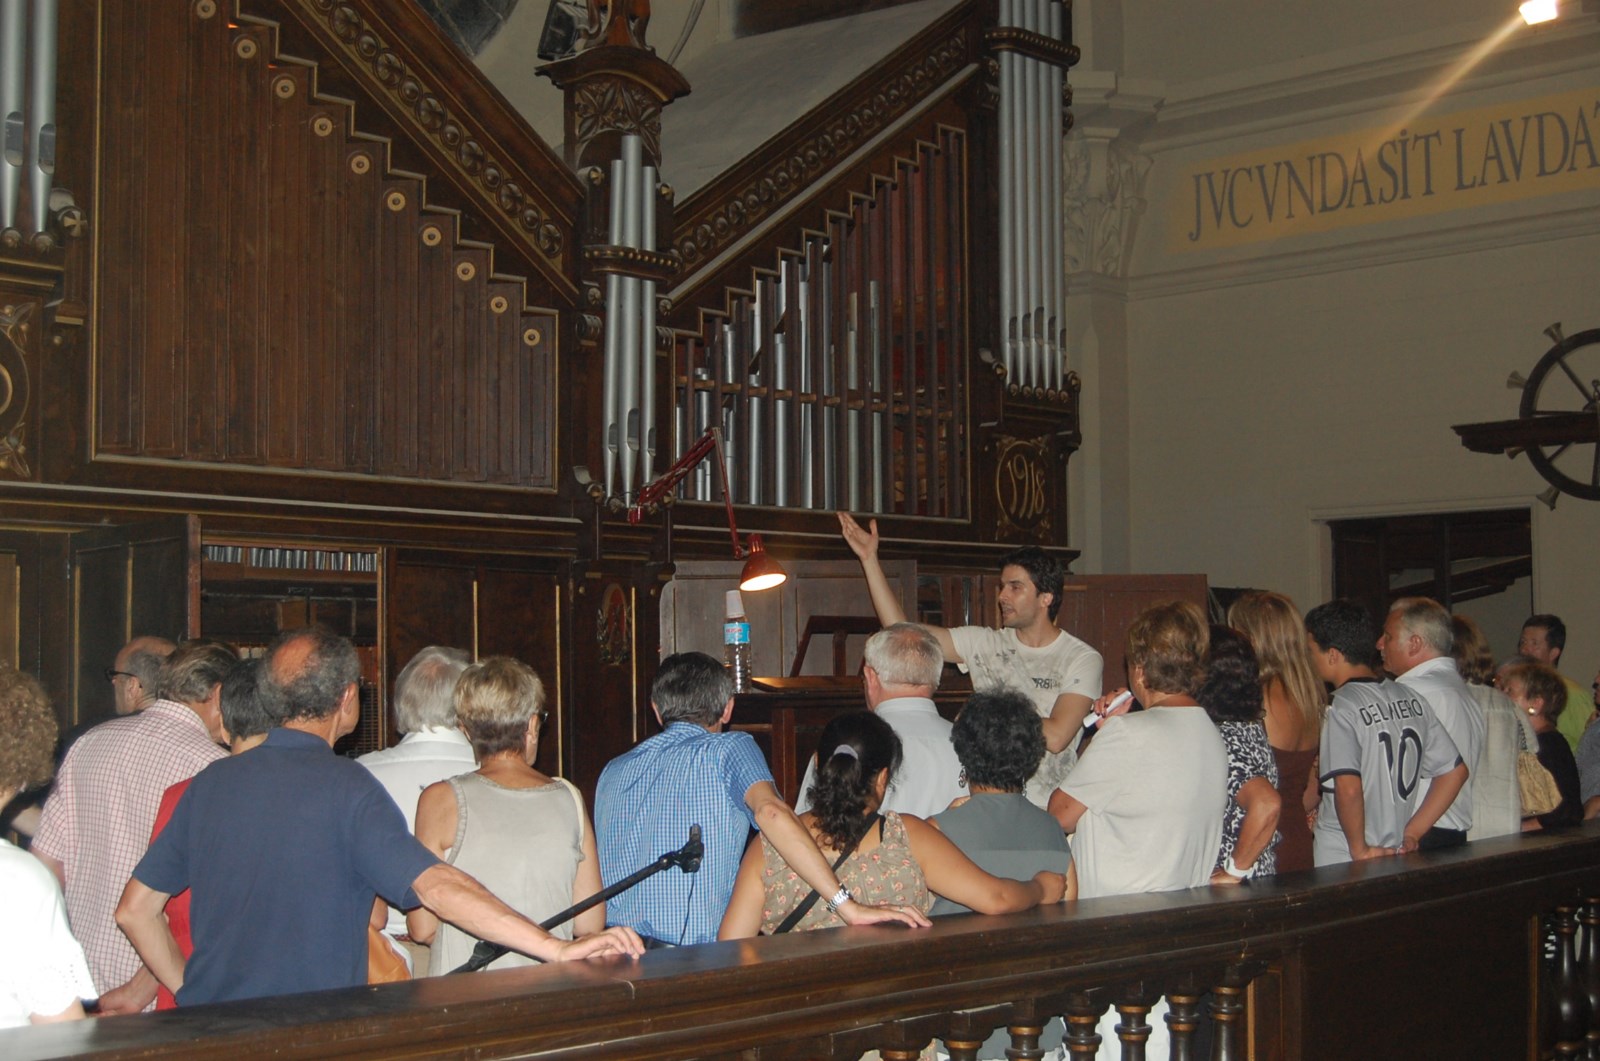 Visita comentada a l'orgue de Llavaneres, divendres 19 de juliol, a l'esglsia parroquial